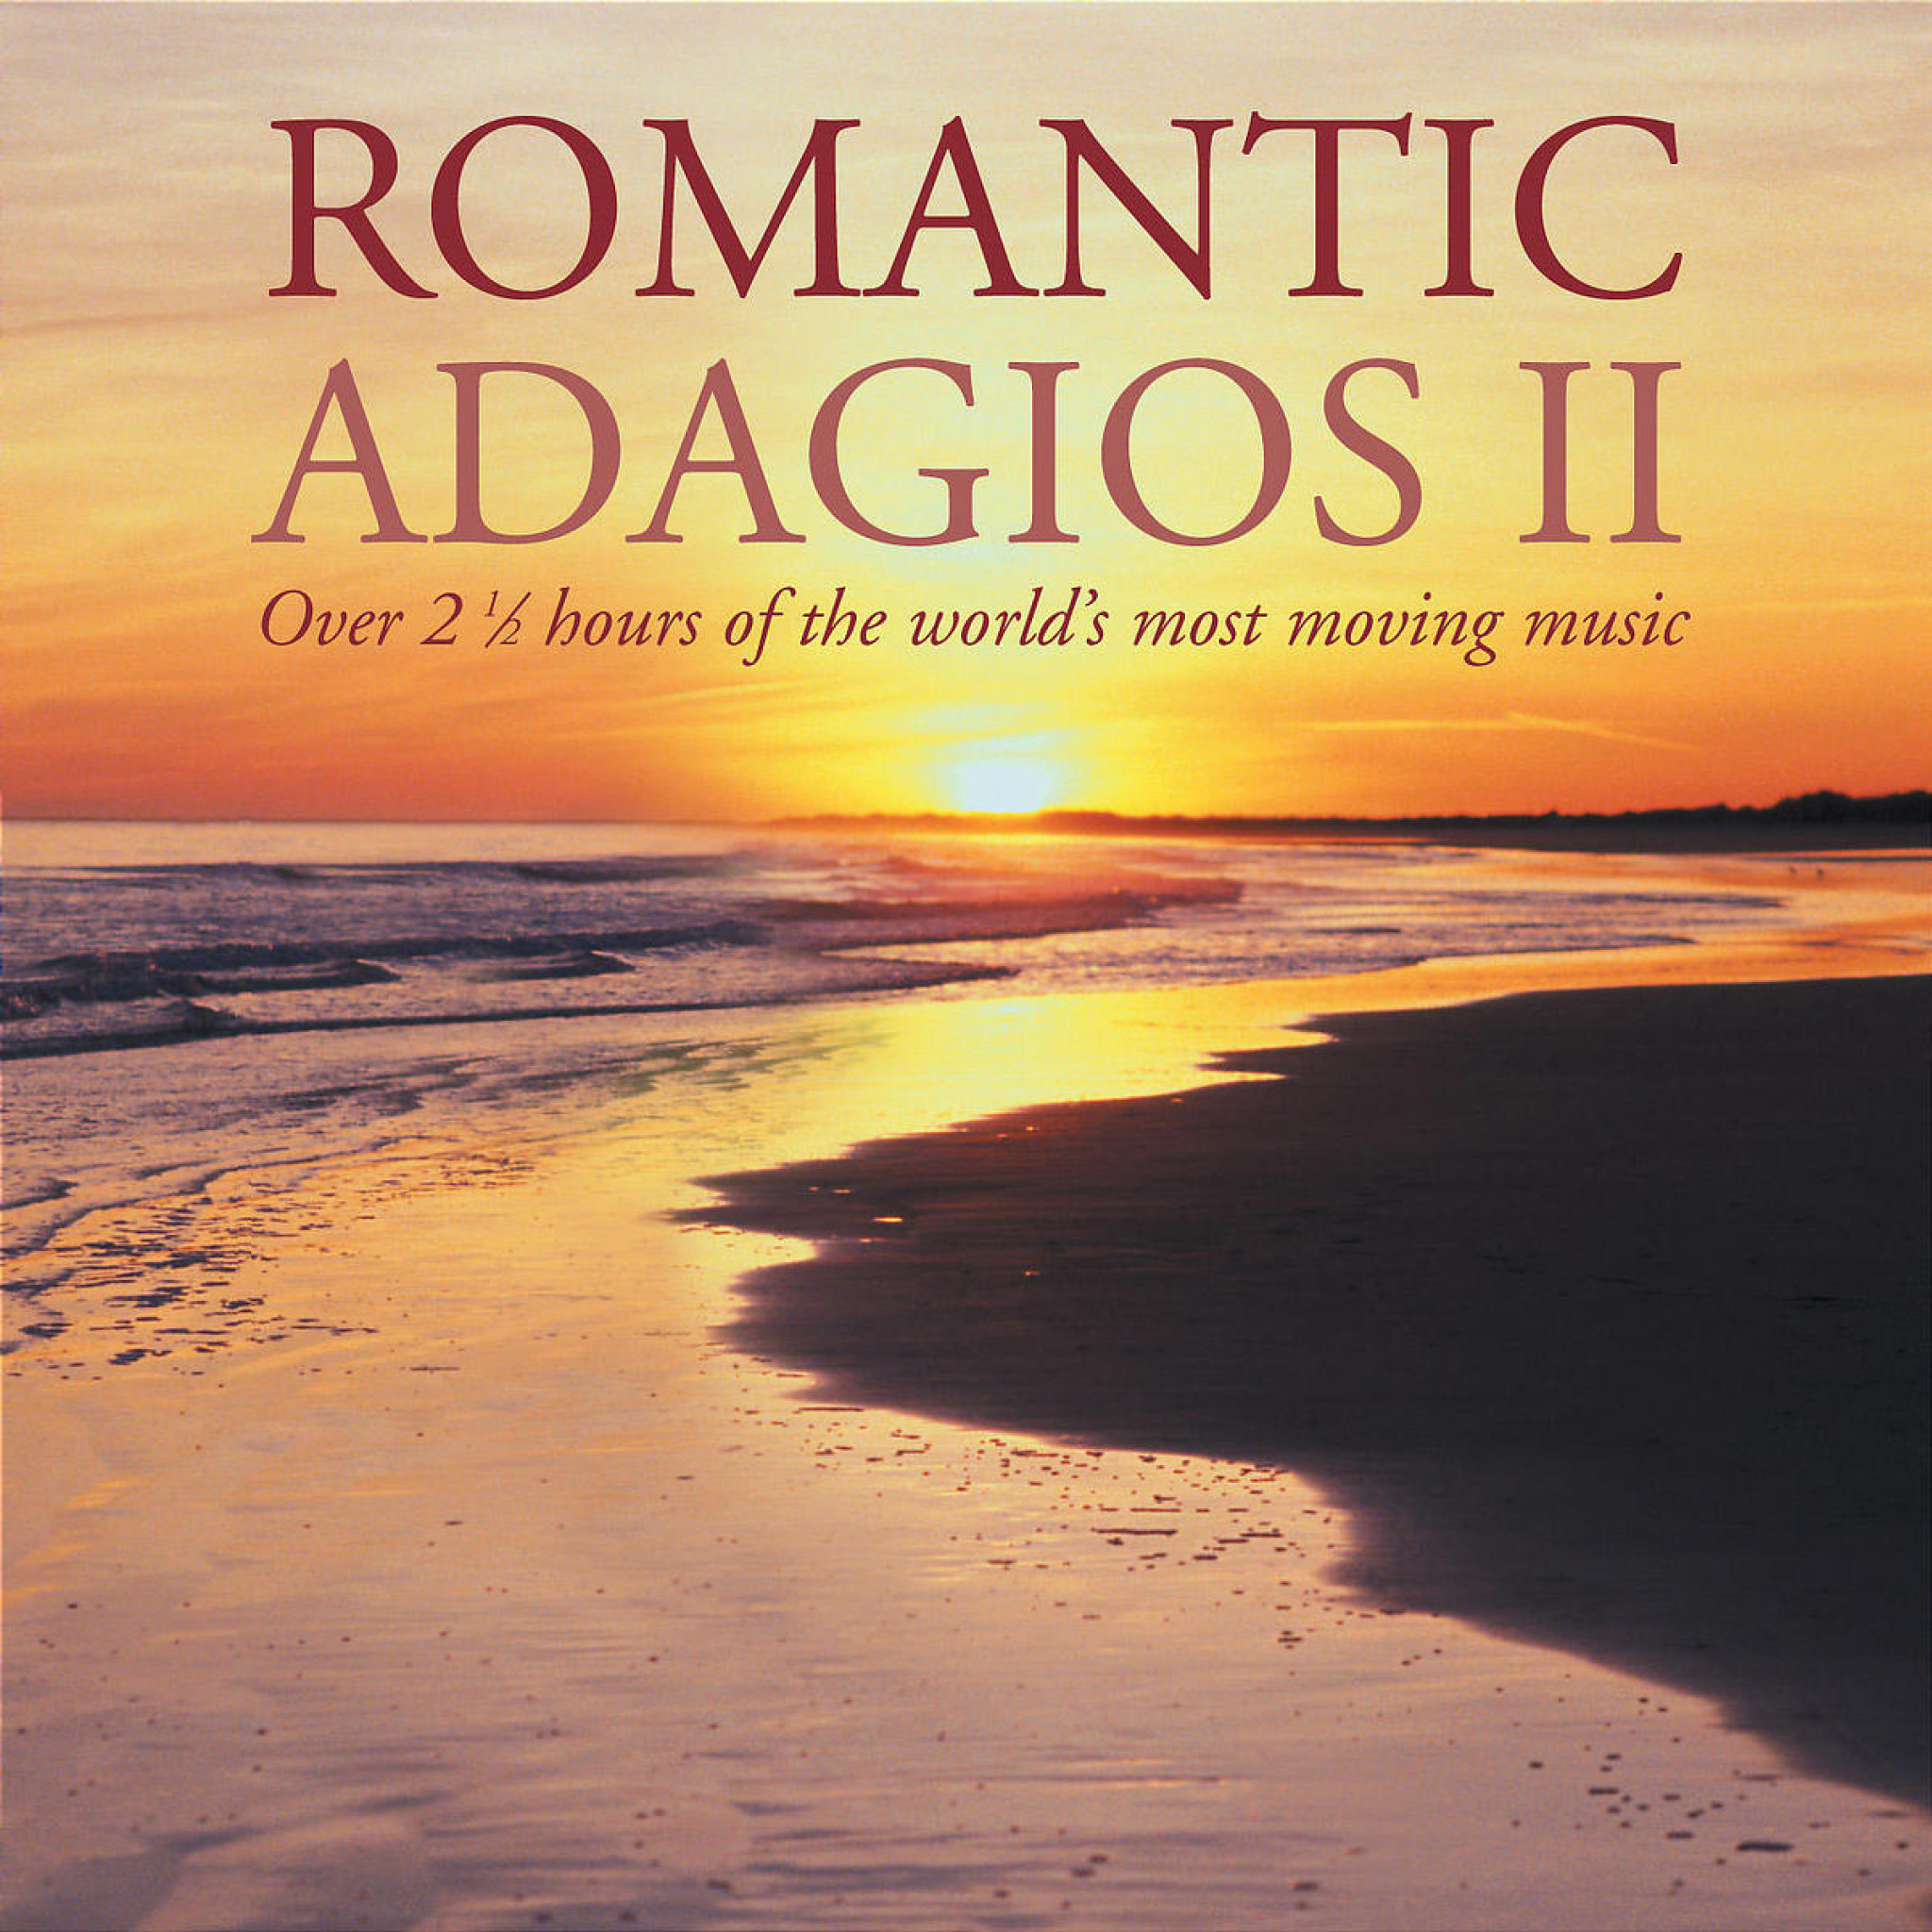 ROMANTIC ADAGIOS II